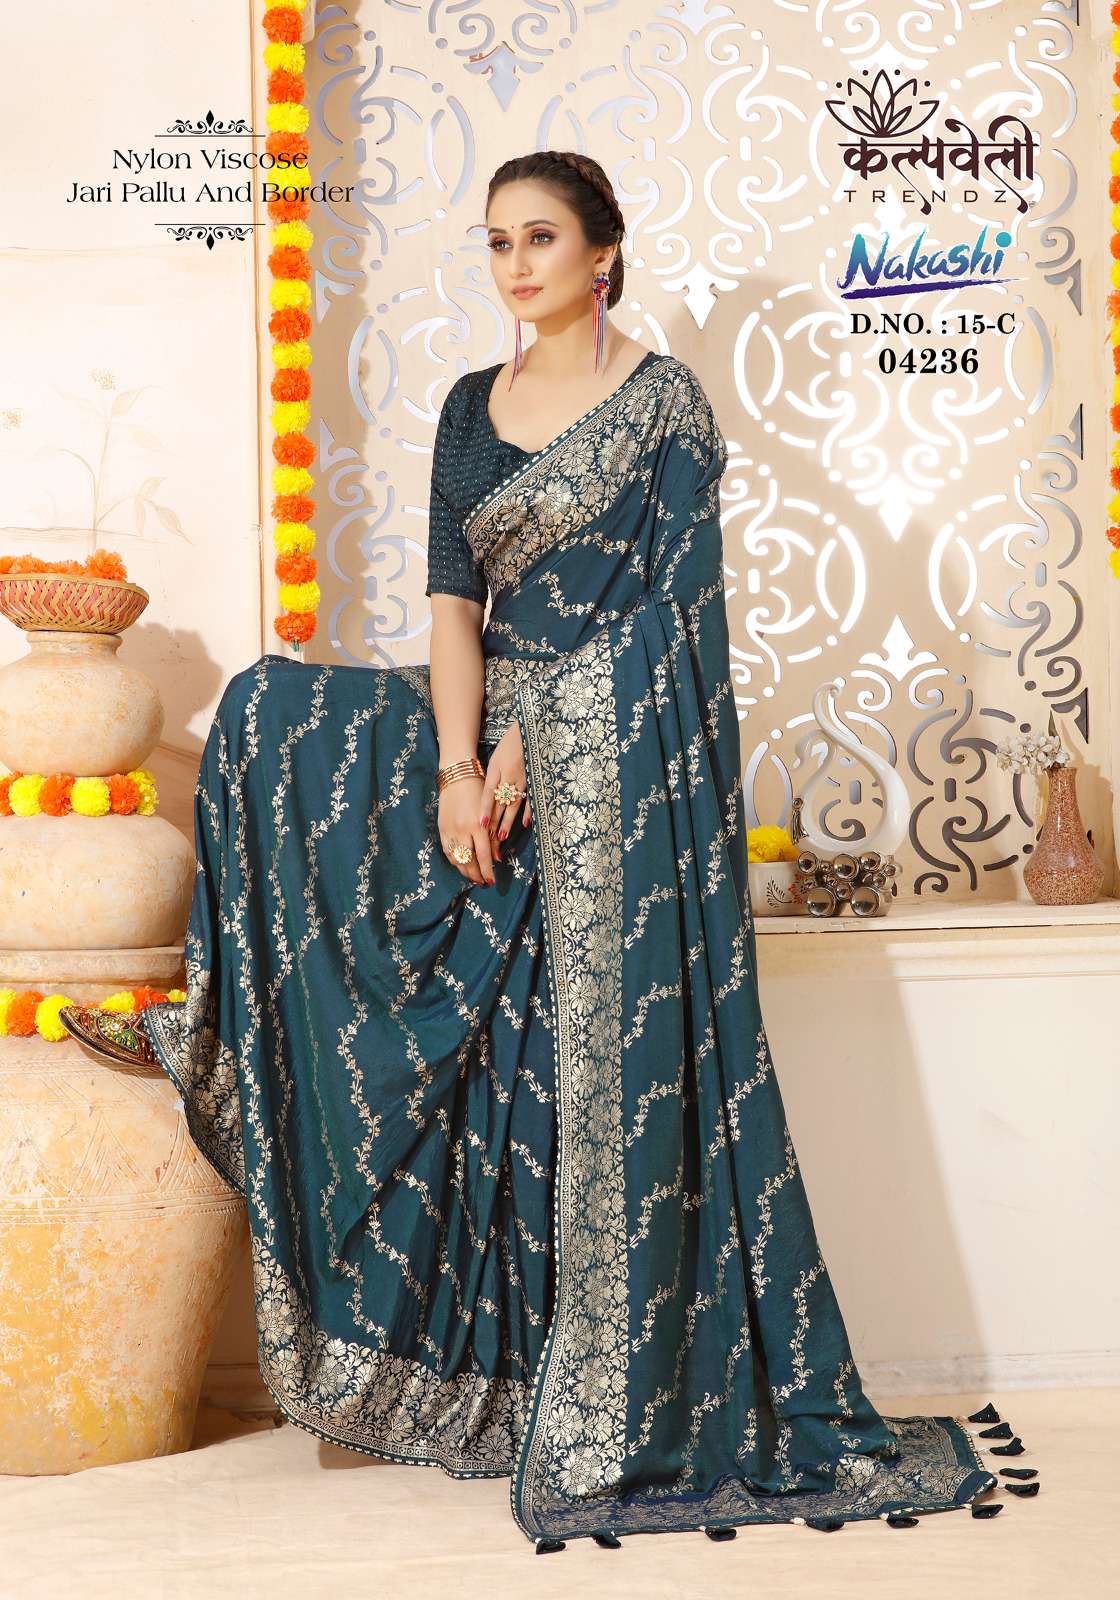 kalpavelly trendz nakashi 15 amazing festive wear saree collection